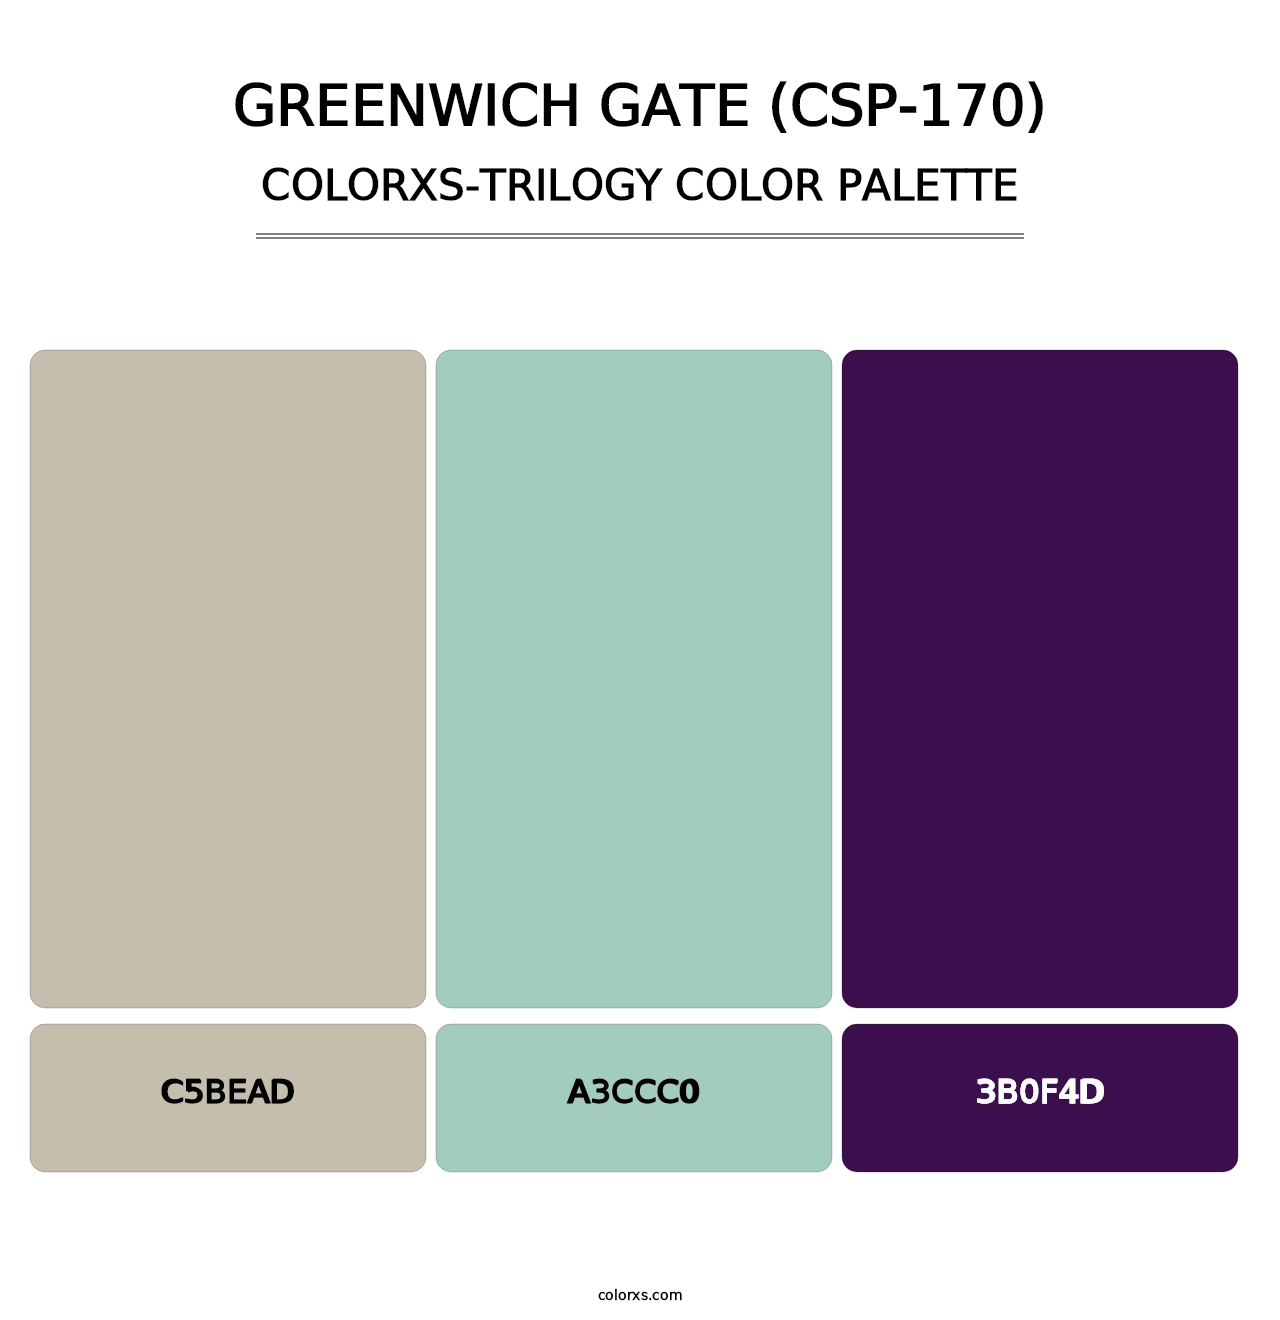 Greenwich Gate (CSP-170) - Colorxs Trilogy Palette